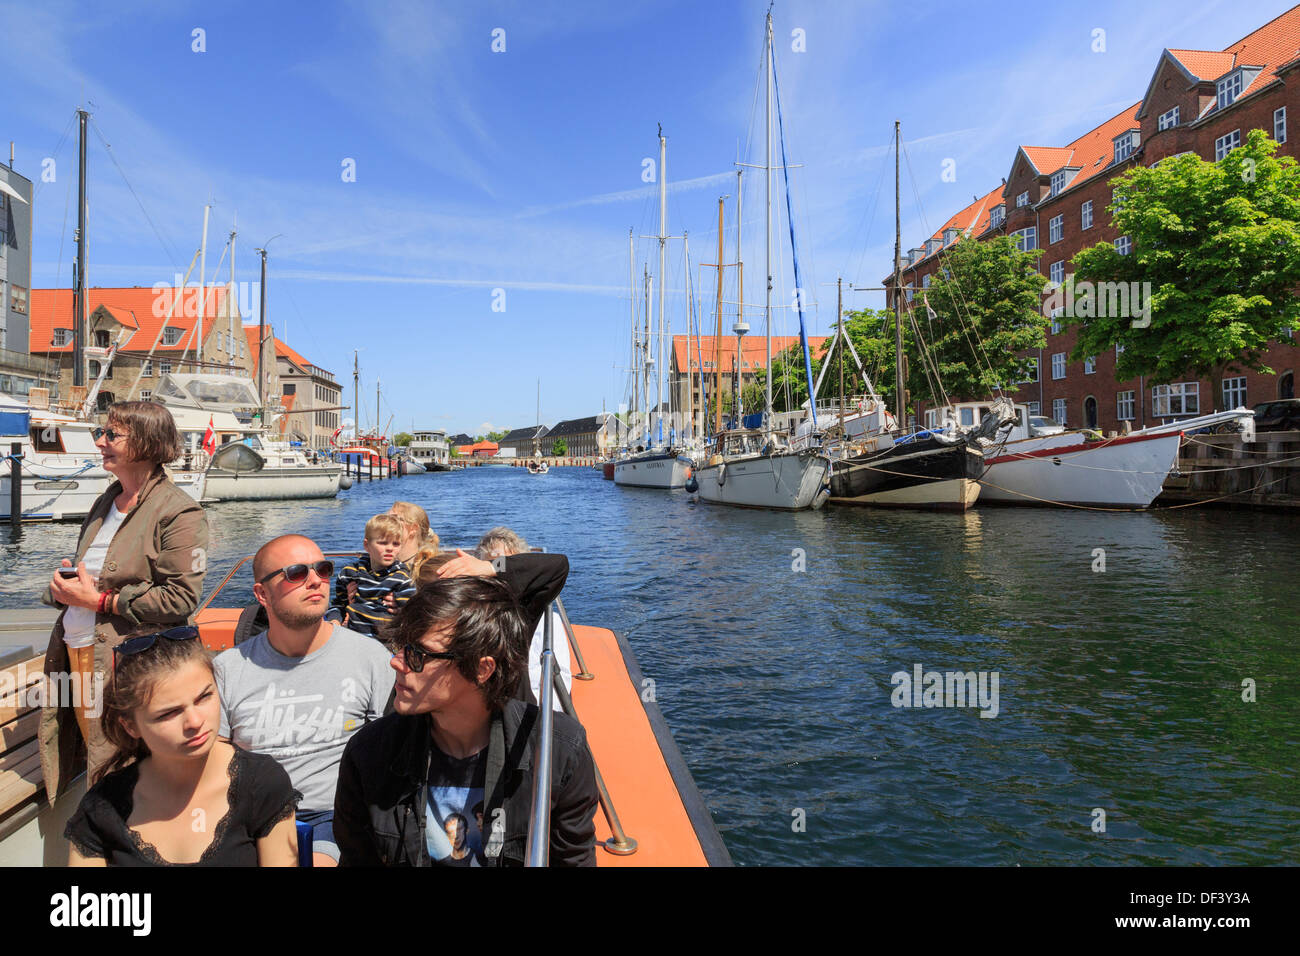 Touristen-Sightseeing cruise Boot auf die Christianshavns Kanal, Overgaden, Christianshavn, Kopenhagen, Seeland, Dänemark Stockfoto